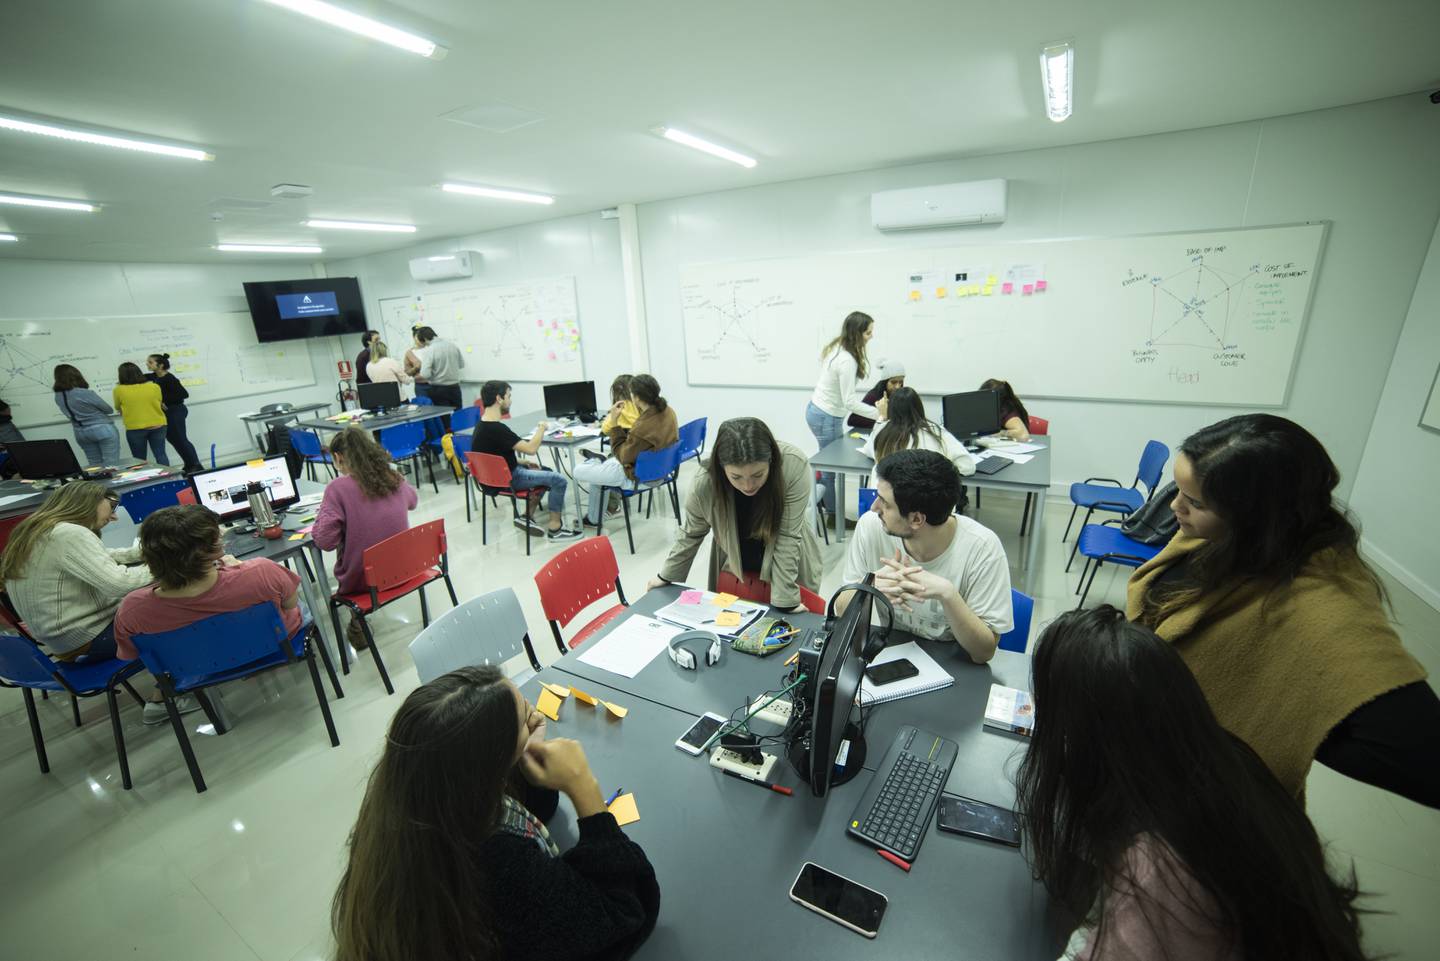 Una de las aulas de la Universidad Ort, en su sede central de Montevideo. Fotografía: Imágenes cedidas por la Universidad Ort.dfd